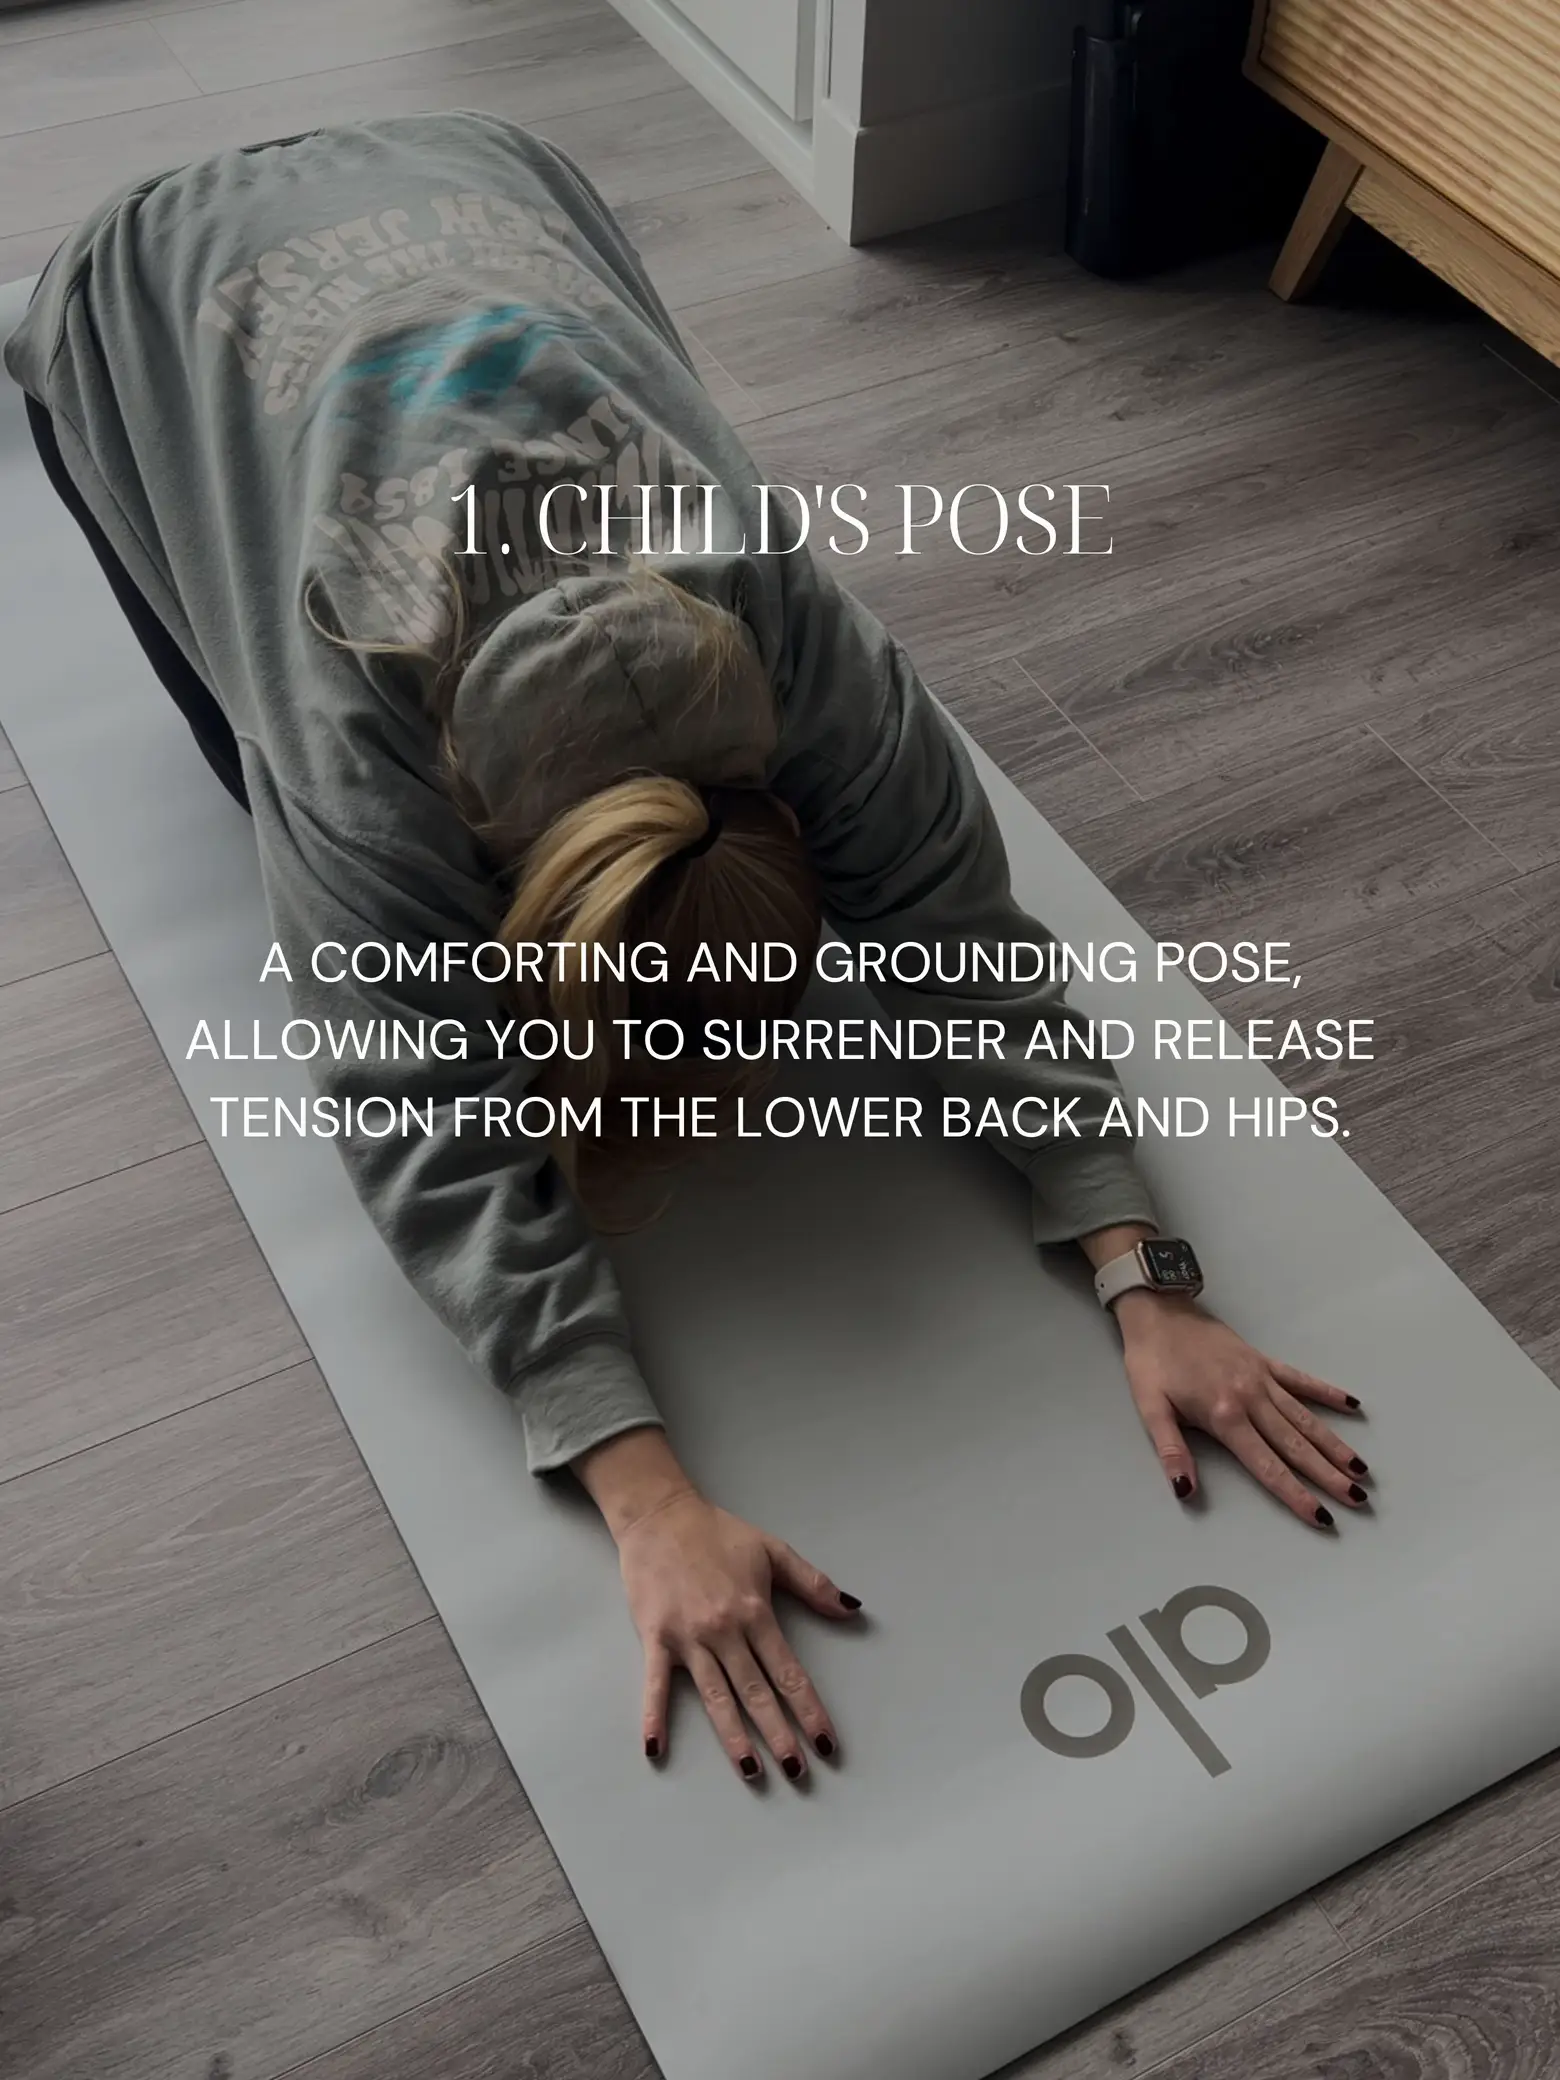 Pregnancy yoga ~ surrender & let go, 20min, hips